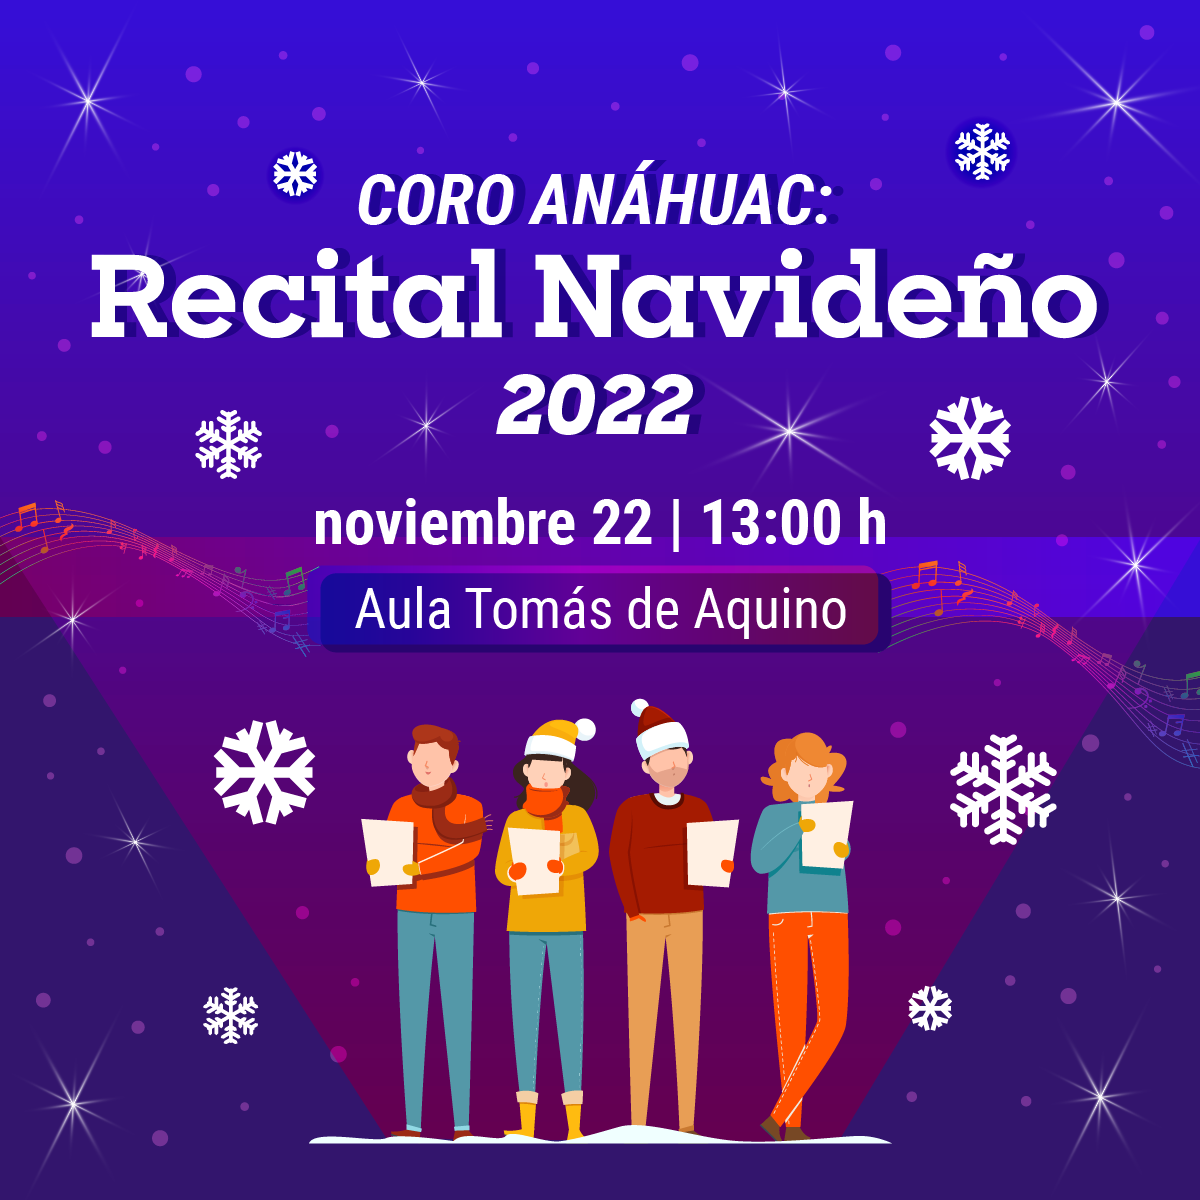 Coro Anáhuac: Recital Navideño 2022